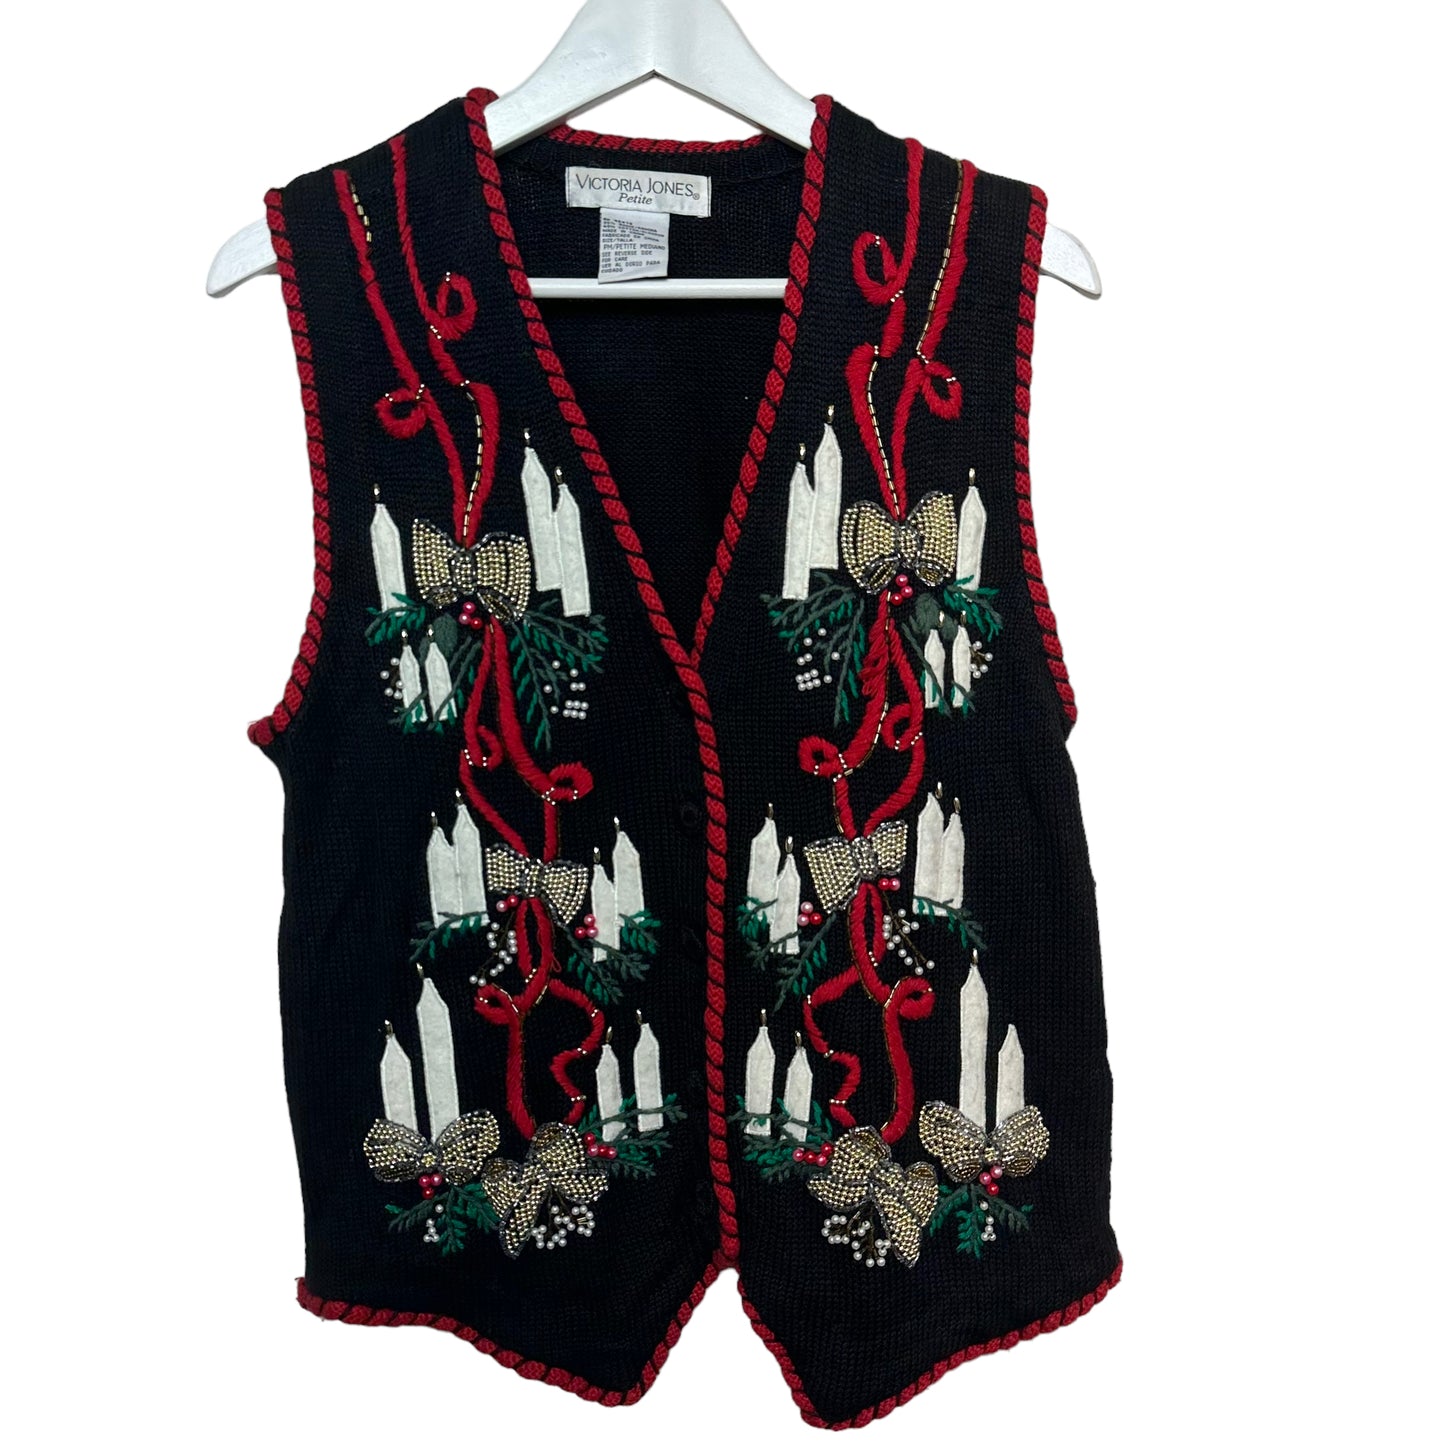 Vintage Victoria Jones Christmas Holiday Sweater Vest Festive Lights Knit Petite Medium